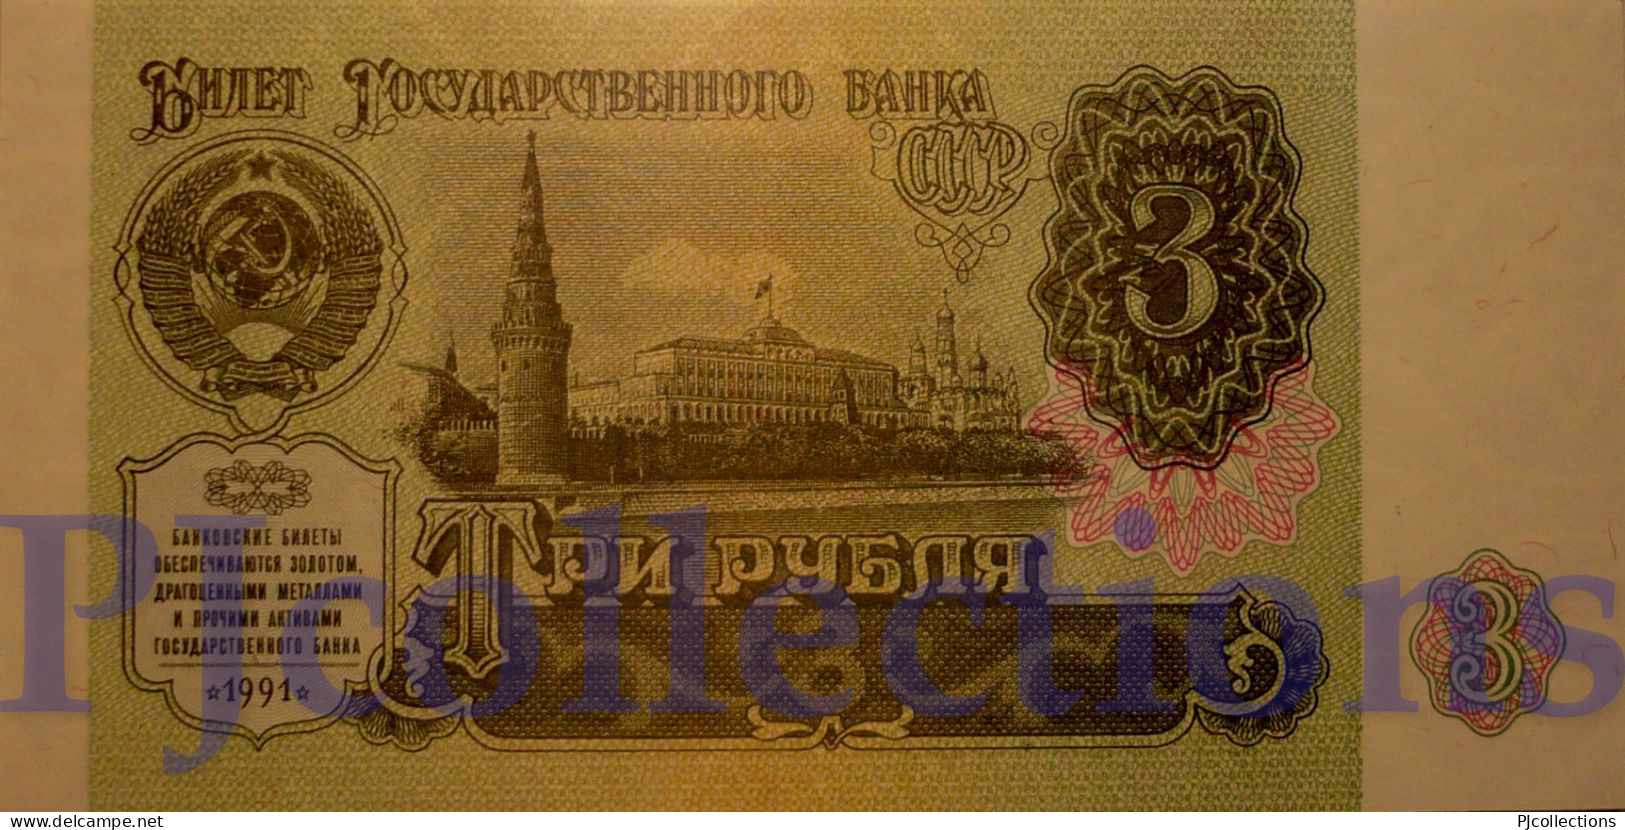 RUSSIA 3 RUBLES 1991 PICK 238a UNC - Russia